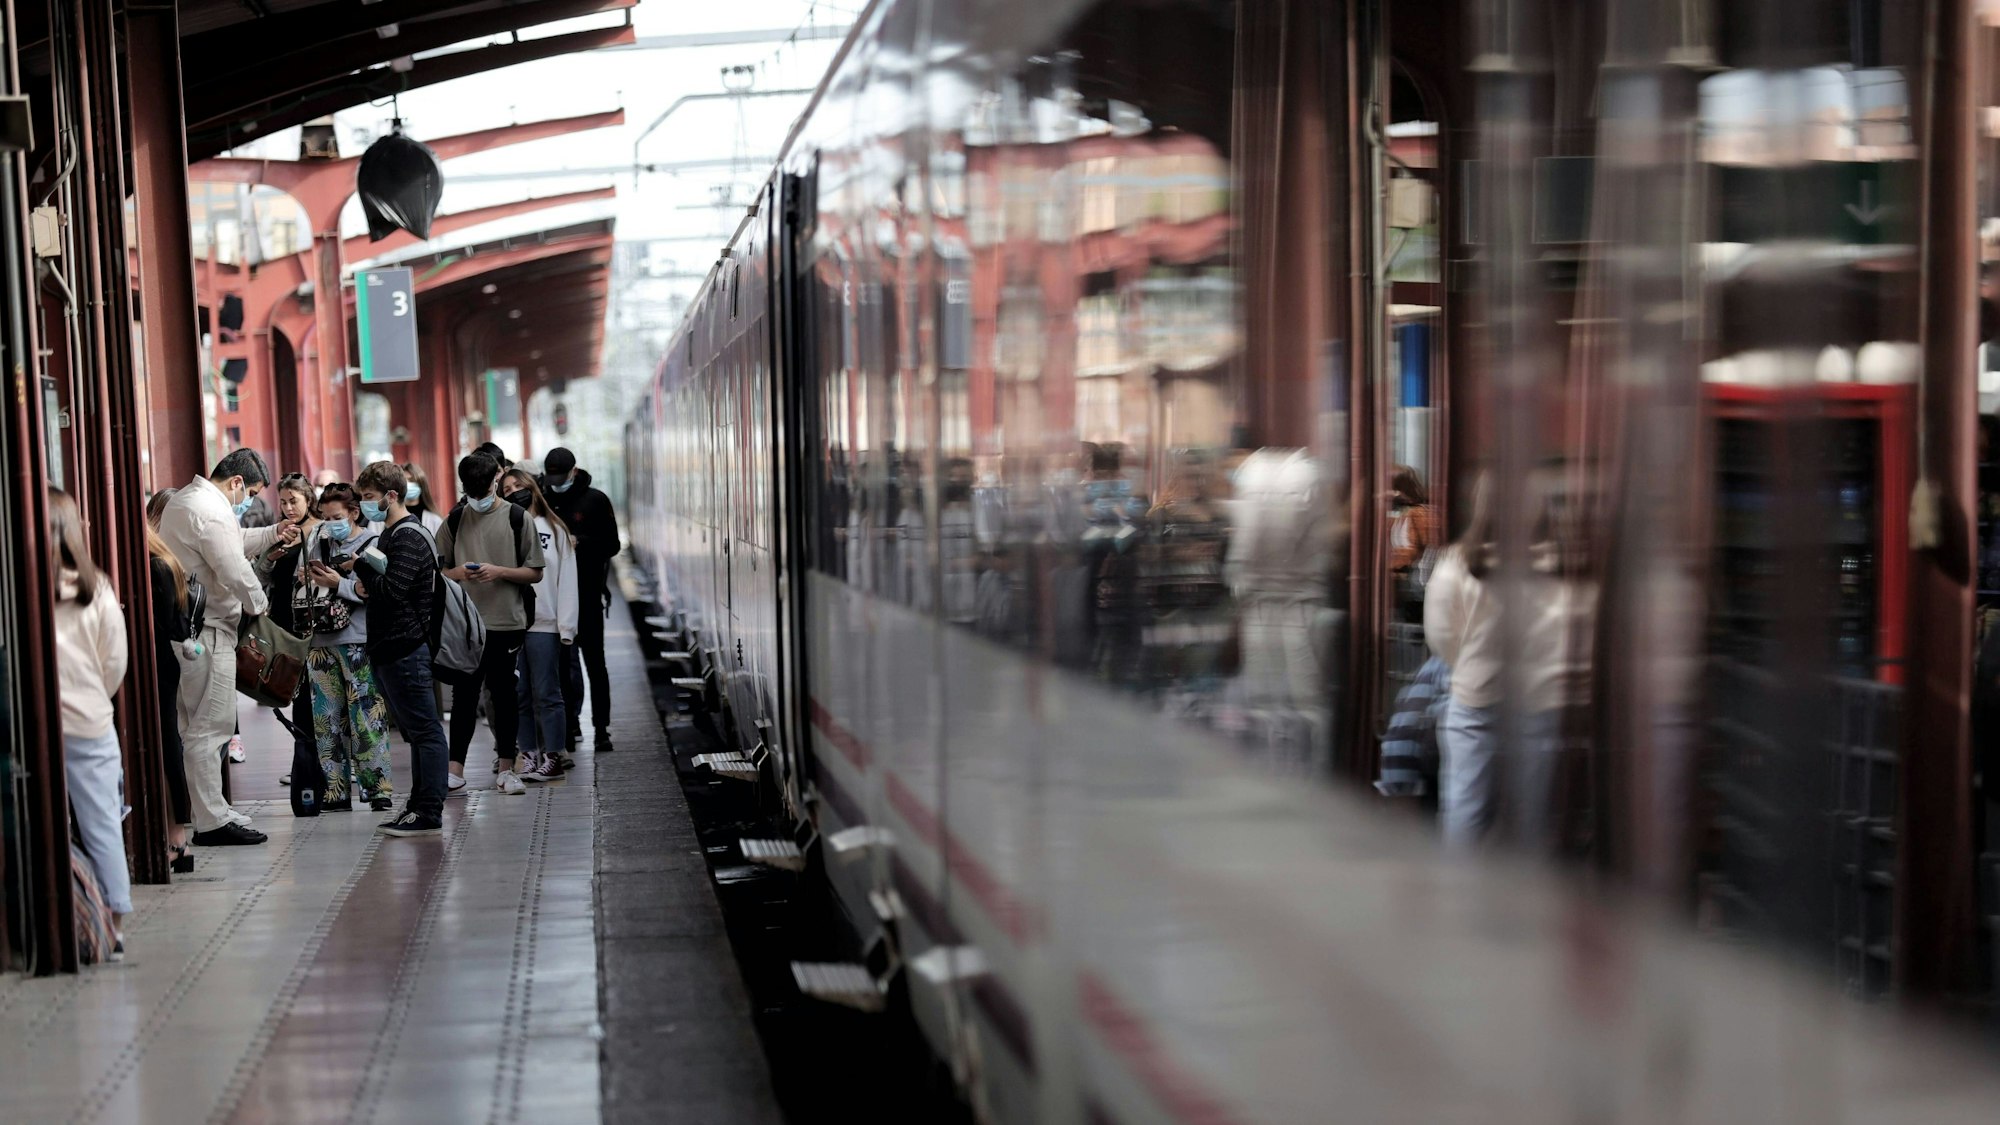 Fahrgäste stehen am Bahnsteig in Madrid neben einem Zug der spanischen Bahn-Gesellschaft Renfe.